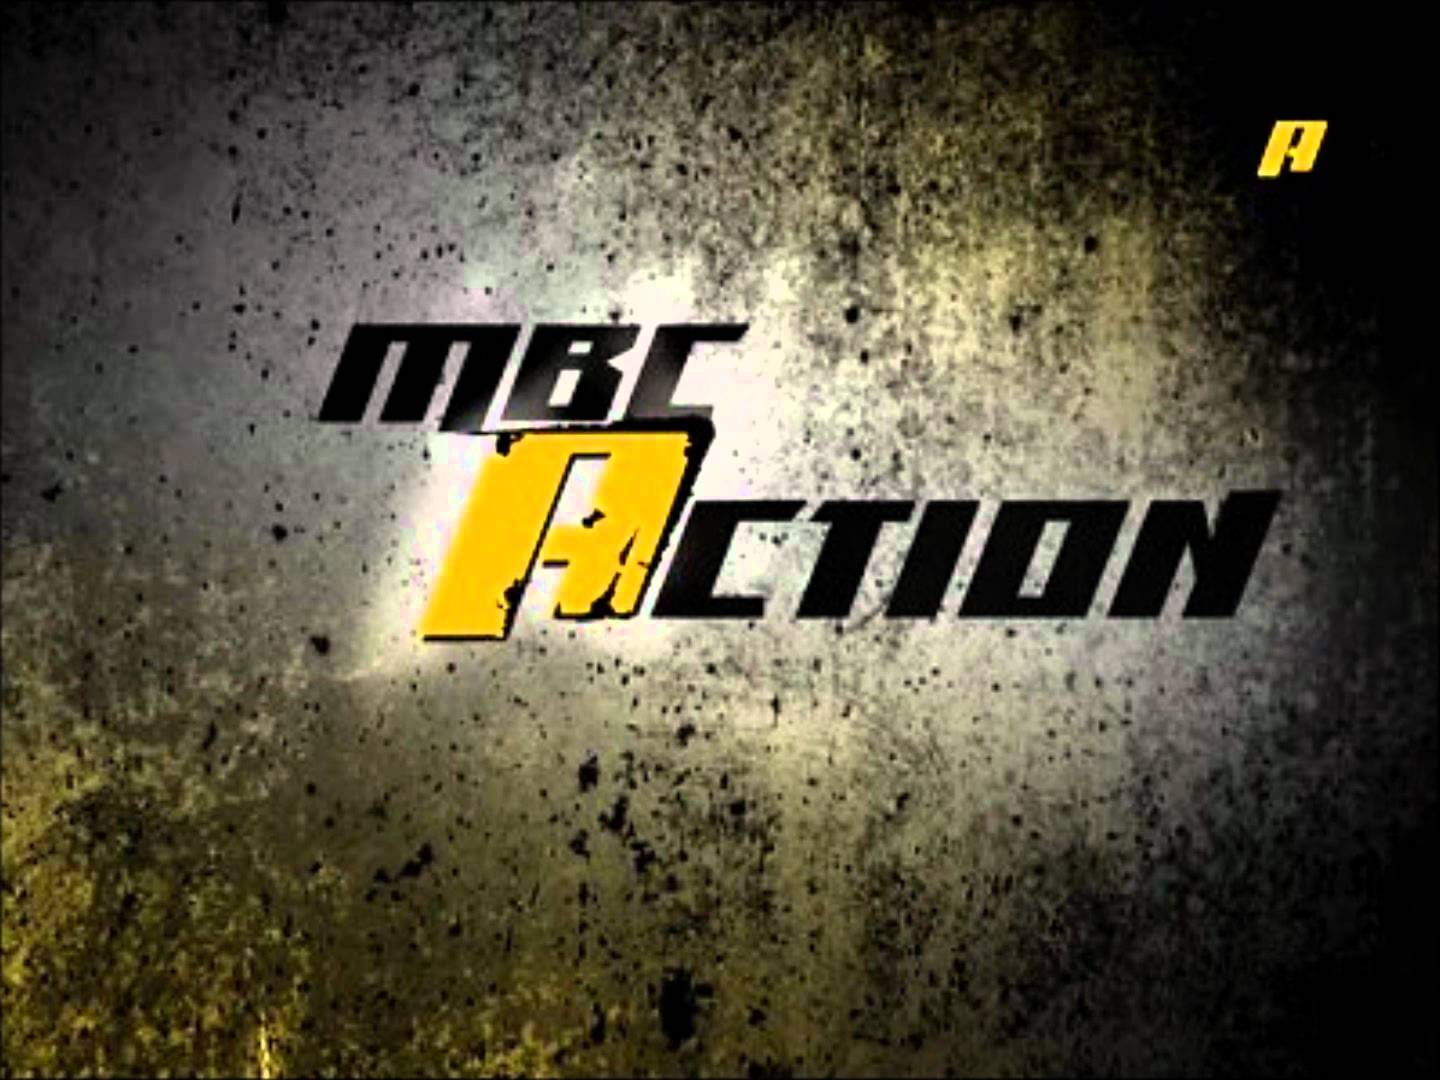 قناة ام بي سي اكشن - مشاهدة قناة ام بي سي اكشن MBC Action بث مباشر.